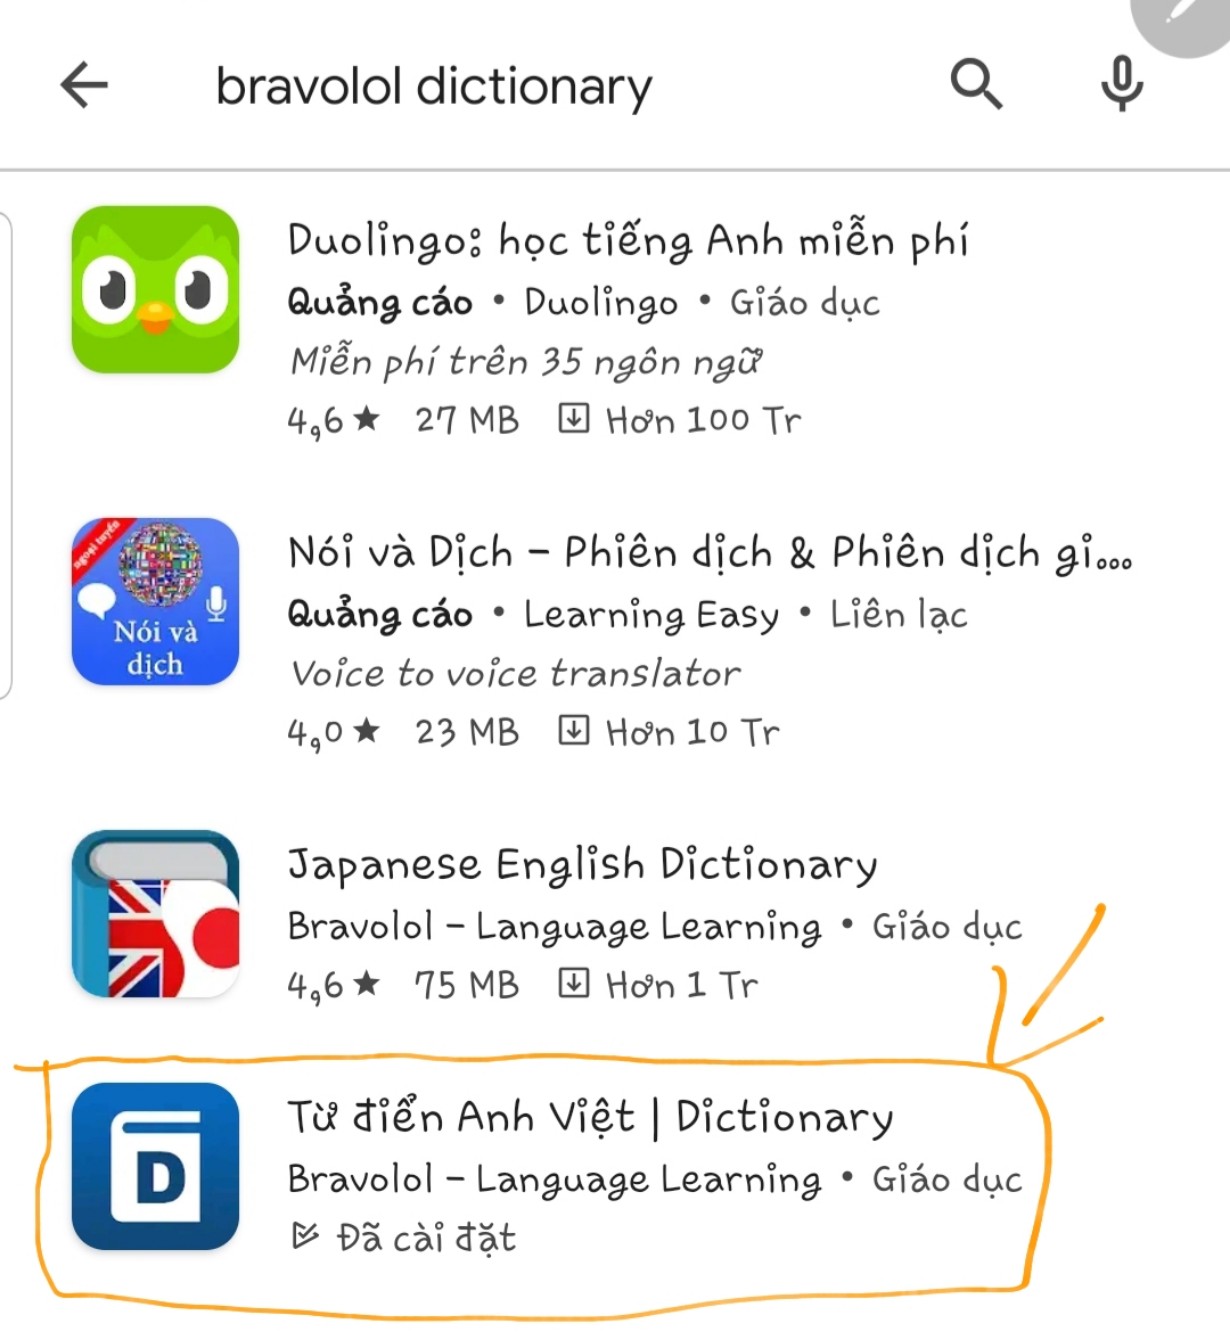 Cách tải Bravolol Dictionary và app tự học tiếng Trung trên Androi